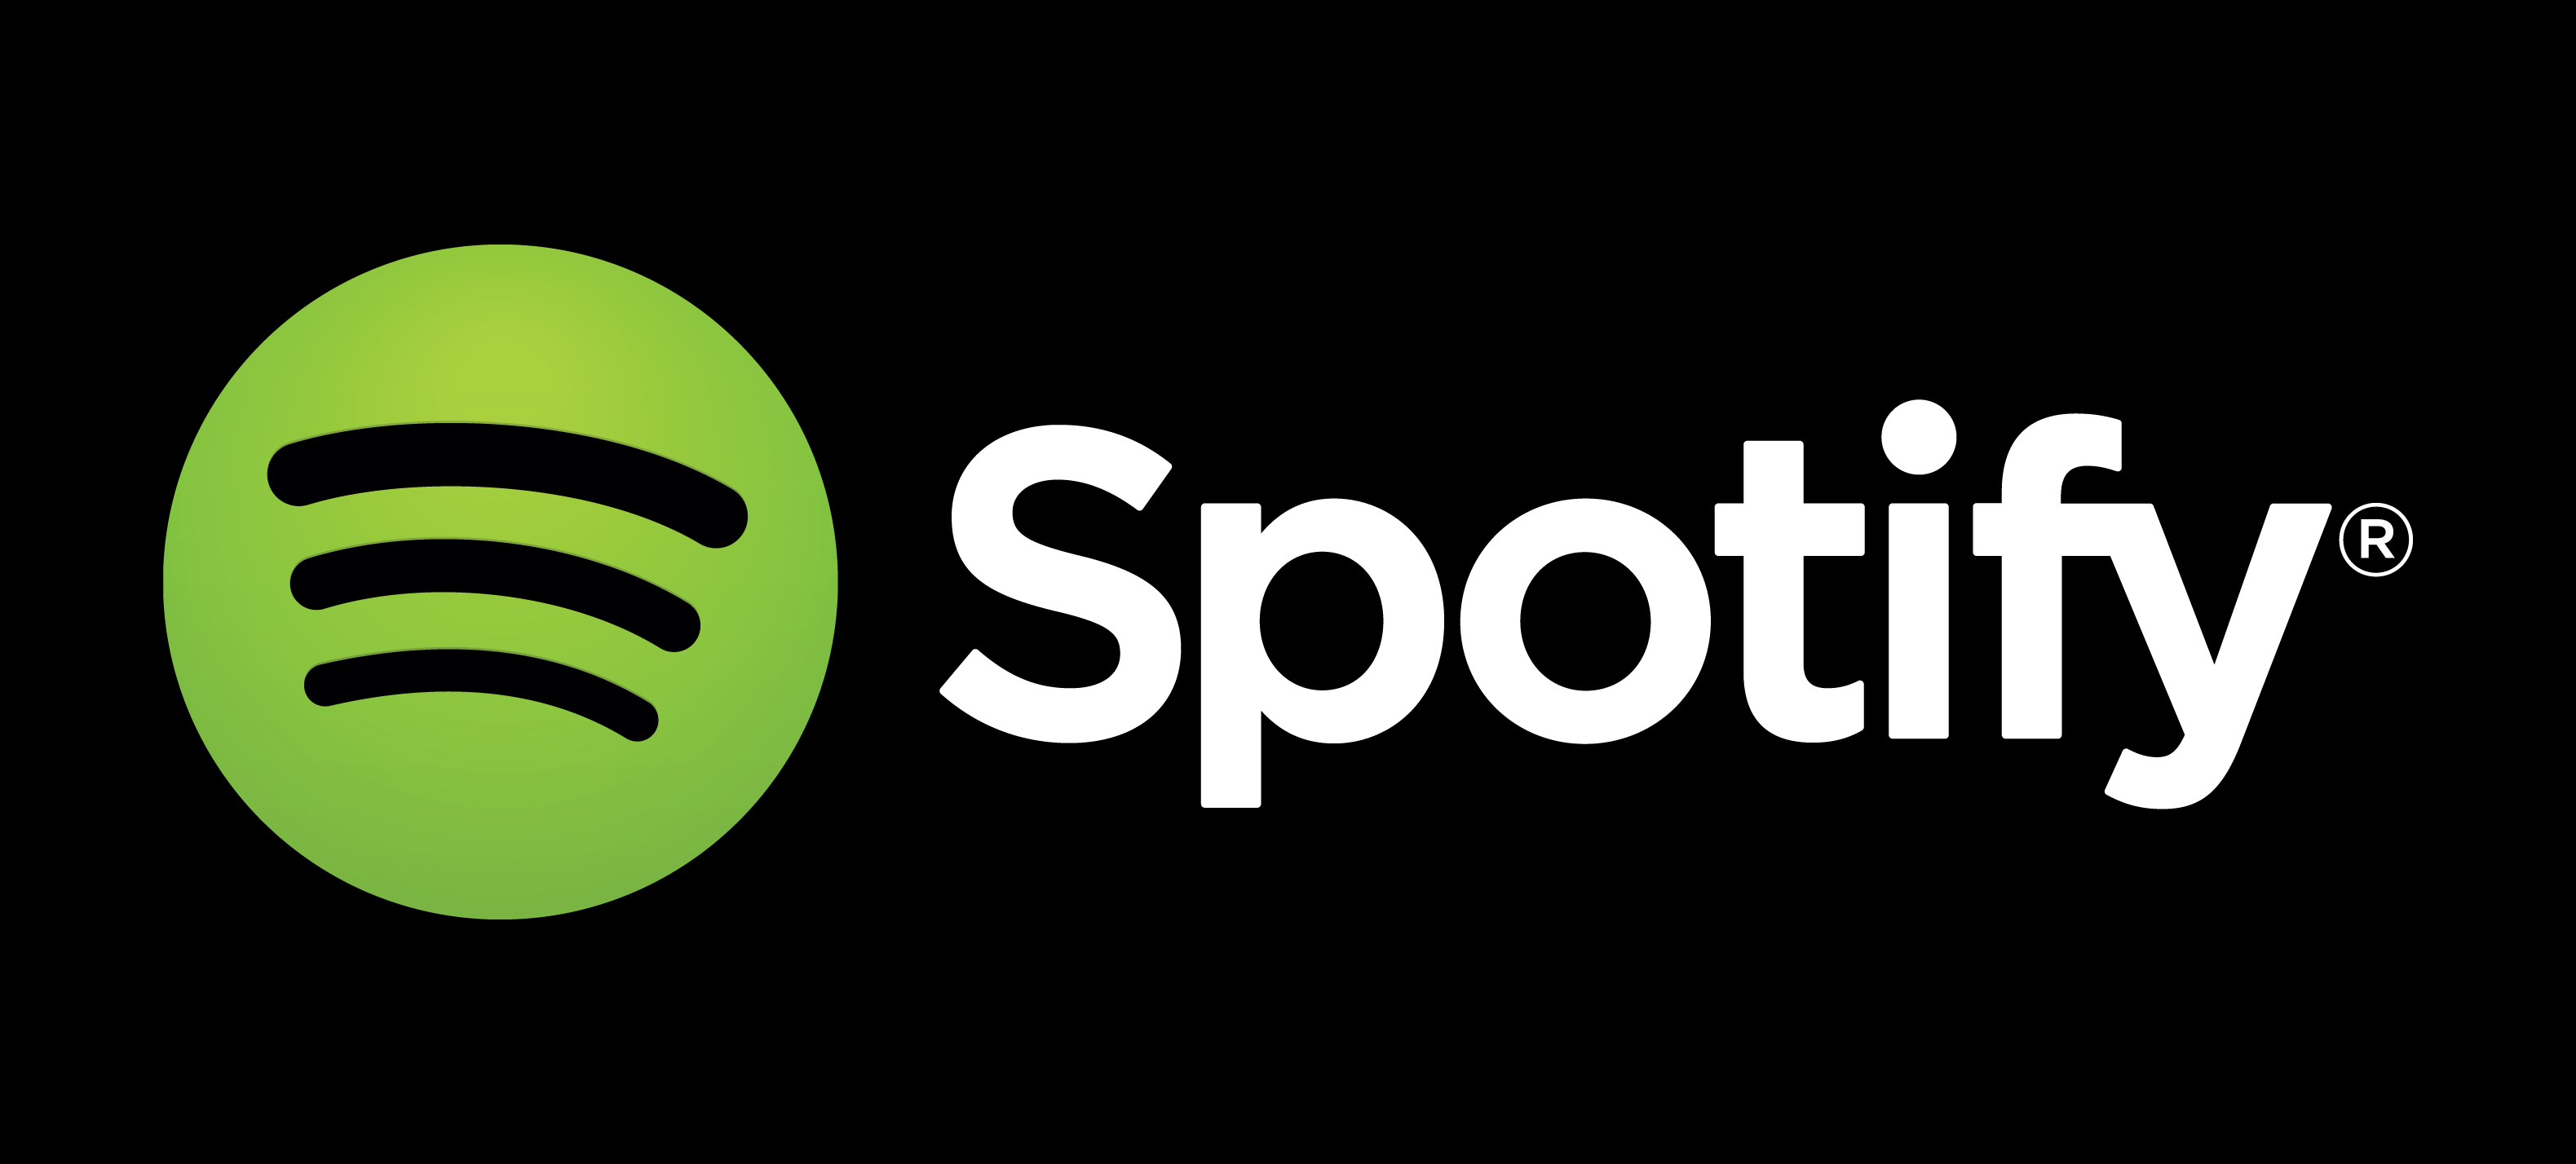 Spotify ma ponad 100 mln aktywnych użytkowników